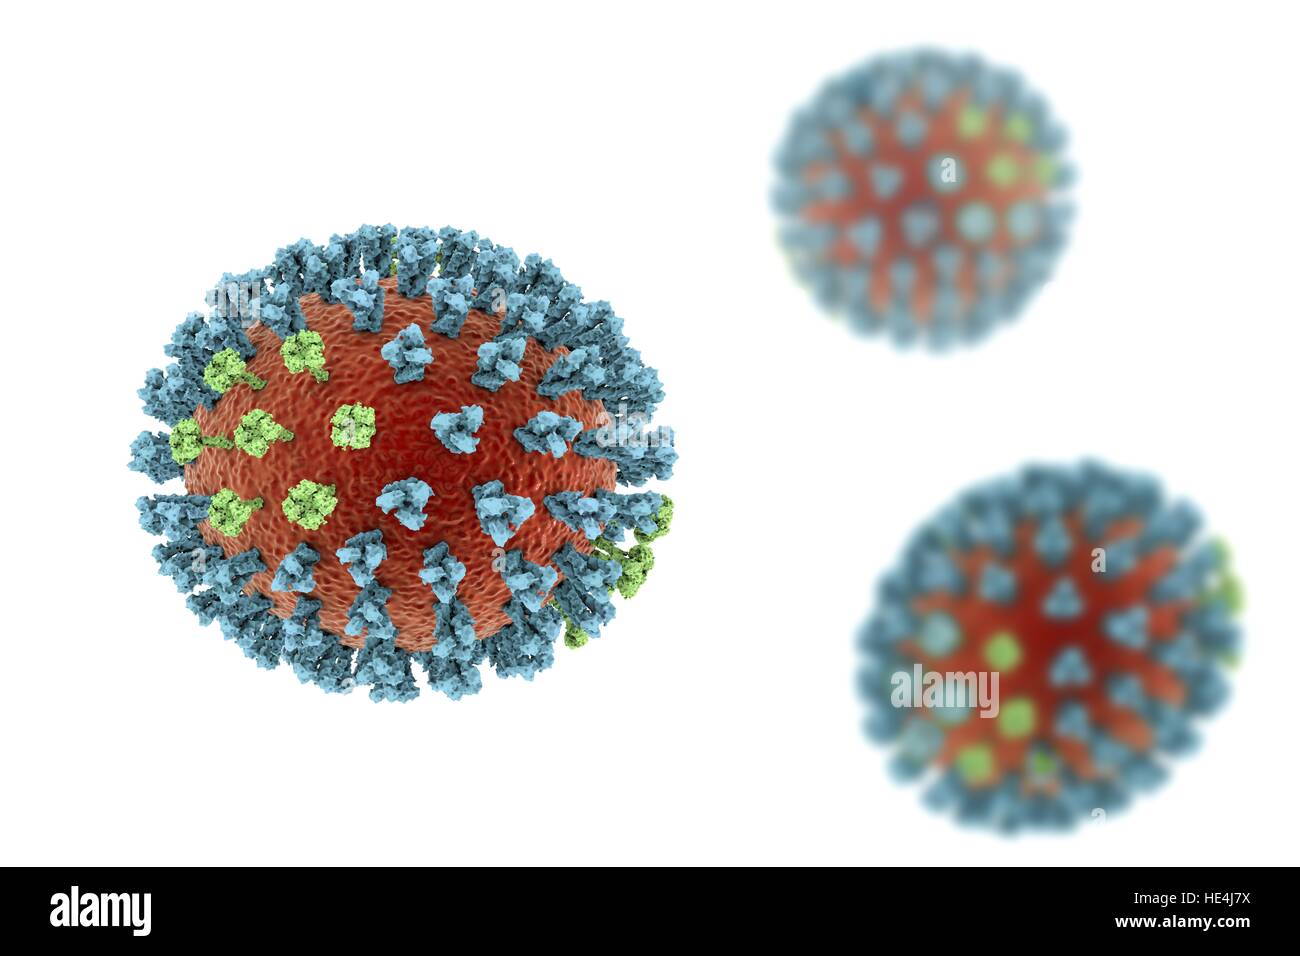 El virus de la gripe aviar. Ilustración 3D de la gripe aviar H5N8 partículas del virus. Dentro de la envoltura de lípidos viral (naranja) son dos tipos de proteínas de Spike, la hemaglutinina (H) y la neuraminidasa (azul, verde), N que determinar la cepa del virus. Esta cepa del virus ha causado enfermedades en aves silvestres y aves de corral en Europa y Asia desde junio de 2016. Excepcionalmente, el virus causa la mortalidad de las aves silvestres, que son más a menudo portadores silenciosos. En diciembre de 2016 no hay casos humanos de la enfermedad han sido reportadas, y el riesgo de transmisión a los seres humanos se considera bajo. Foto de stock